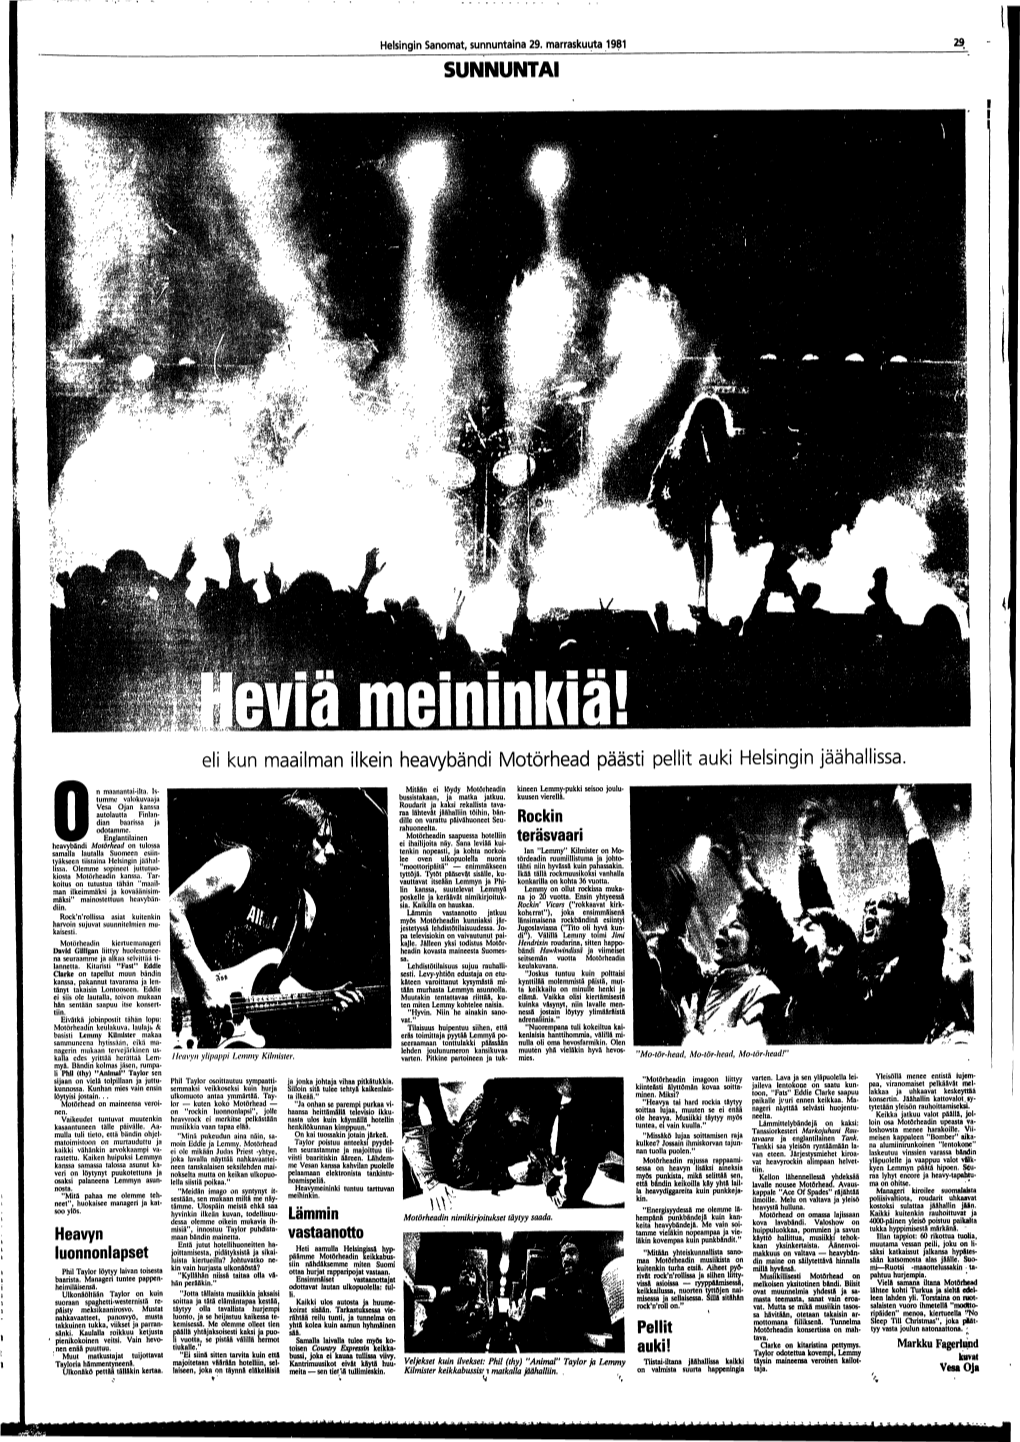 Eli Kun Maailman Ilkein Heavybändi Motörhead Päästi Pellit Auki Helsingin Jäähallissa